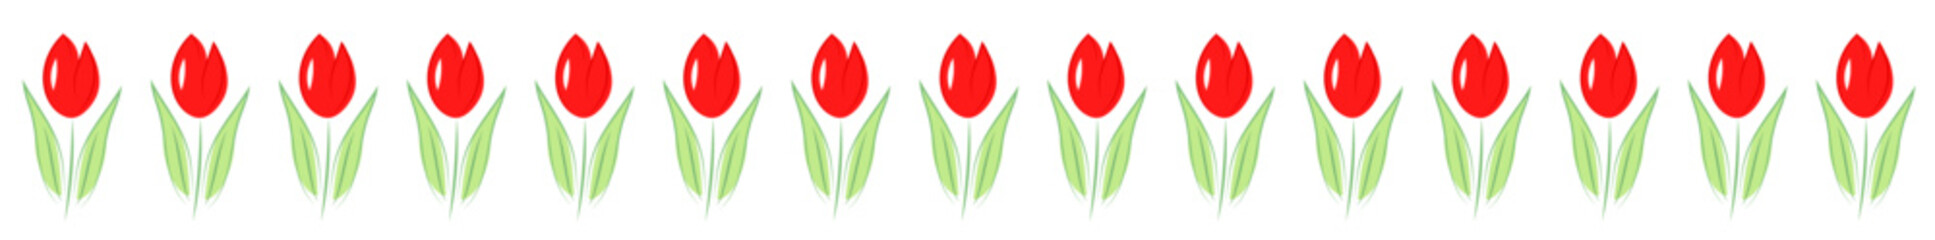 Dekoracyjna linia z czerwonych tulipanów